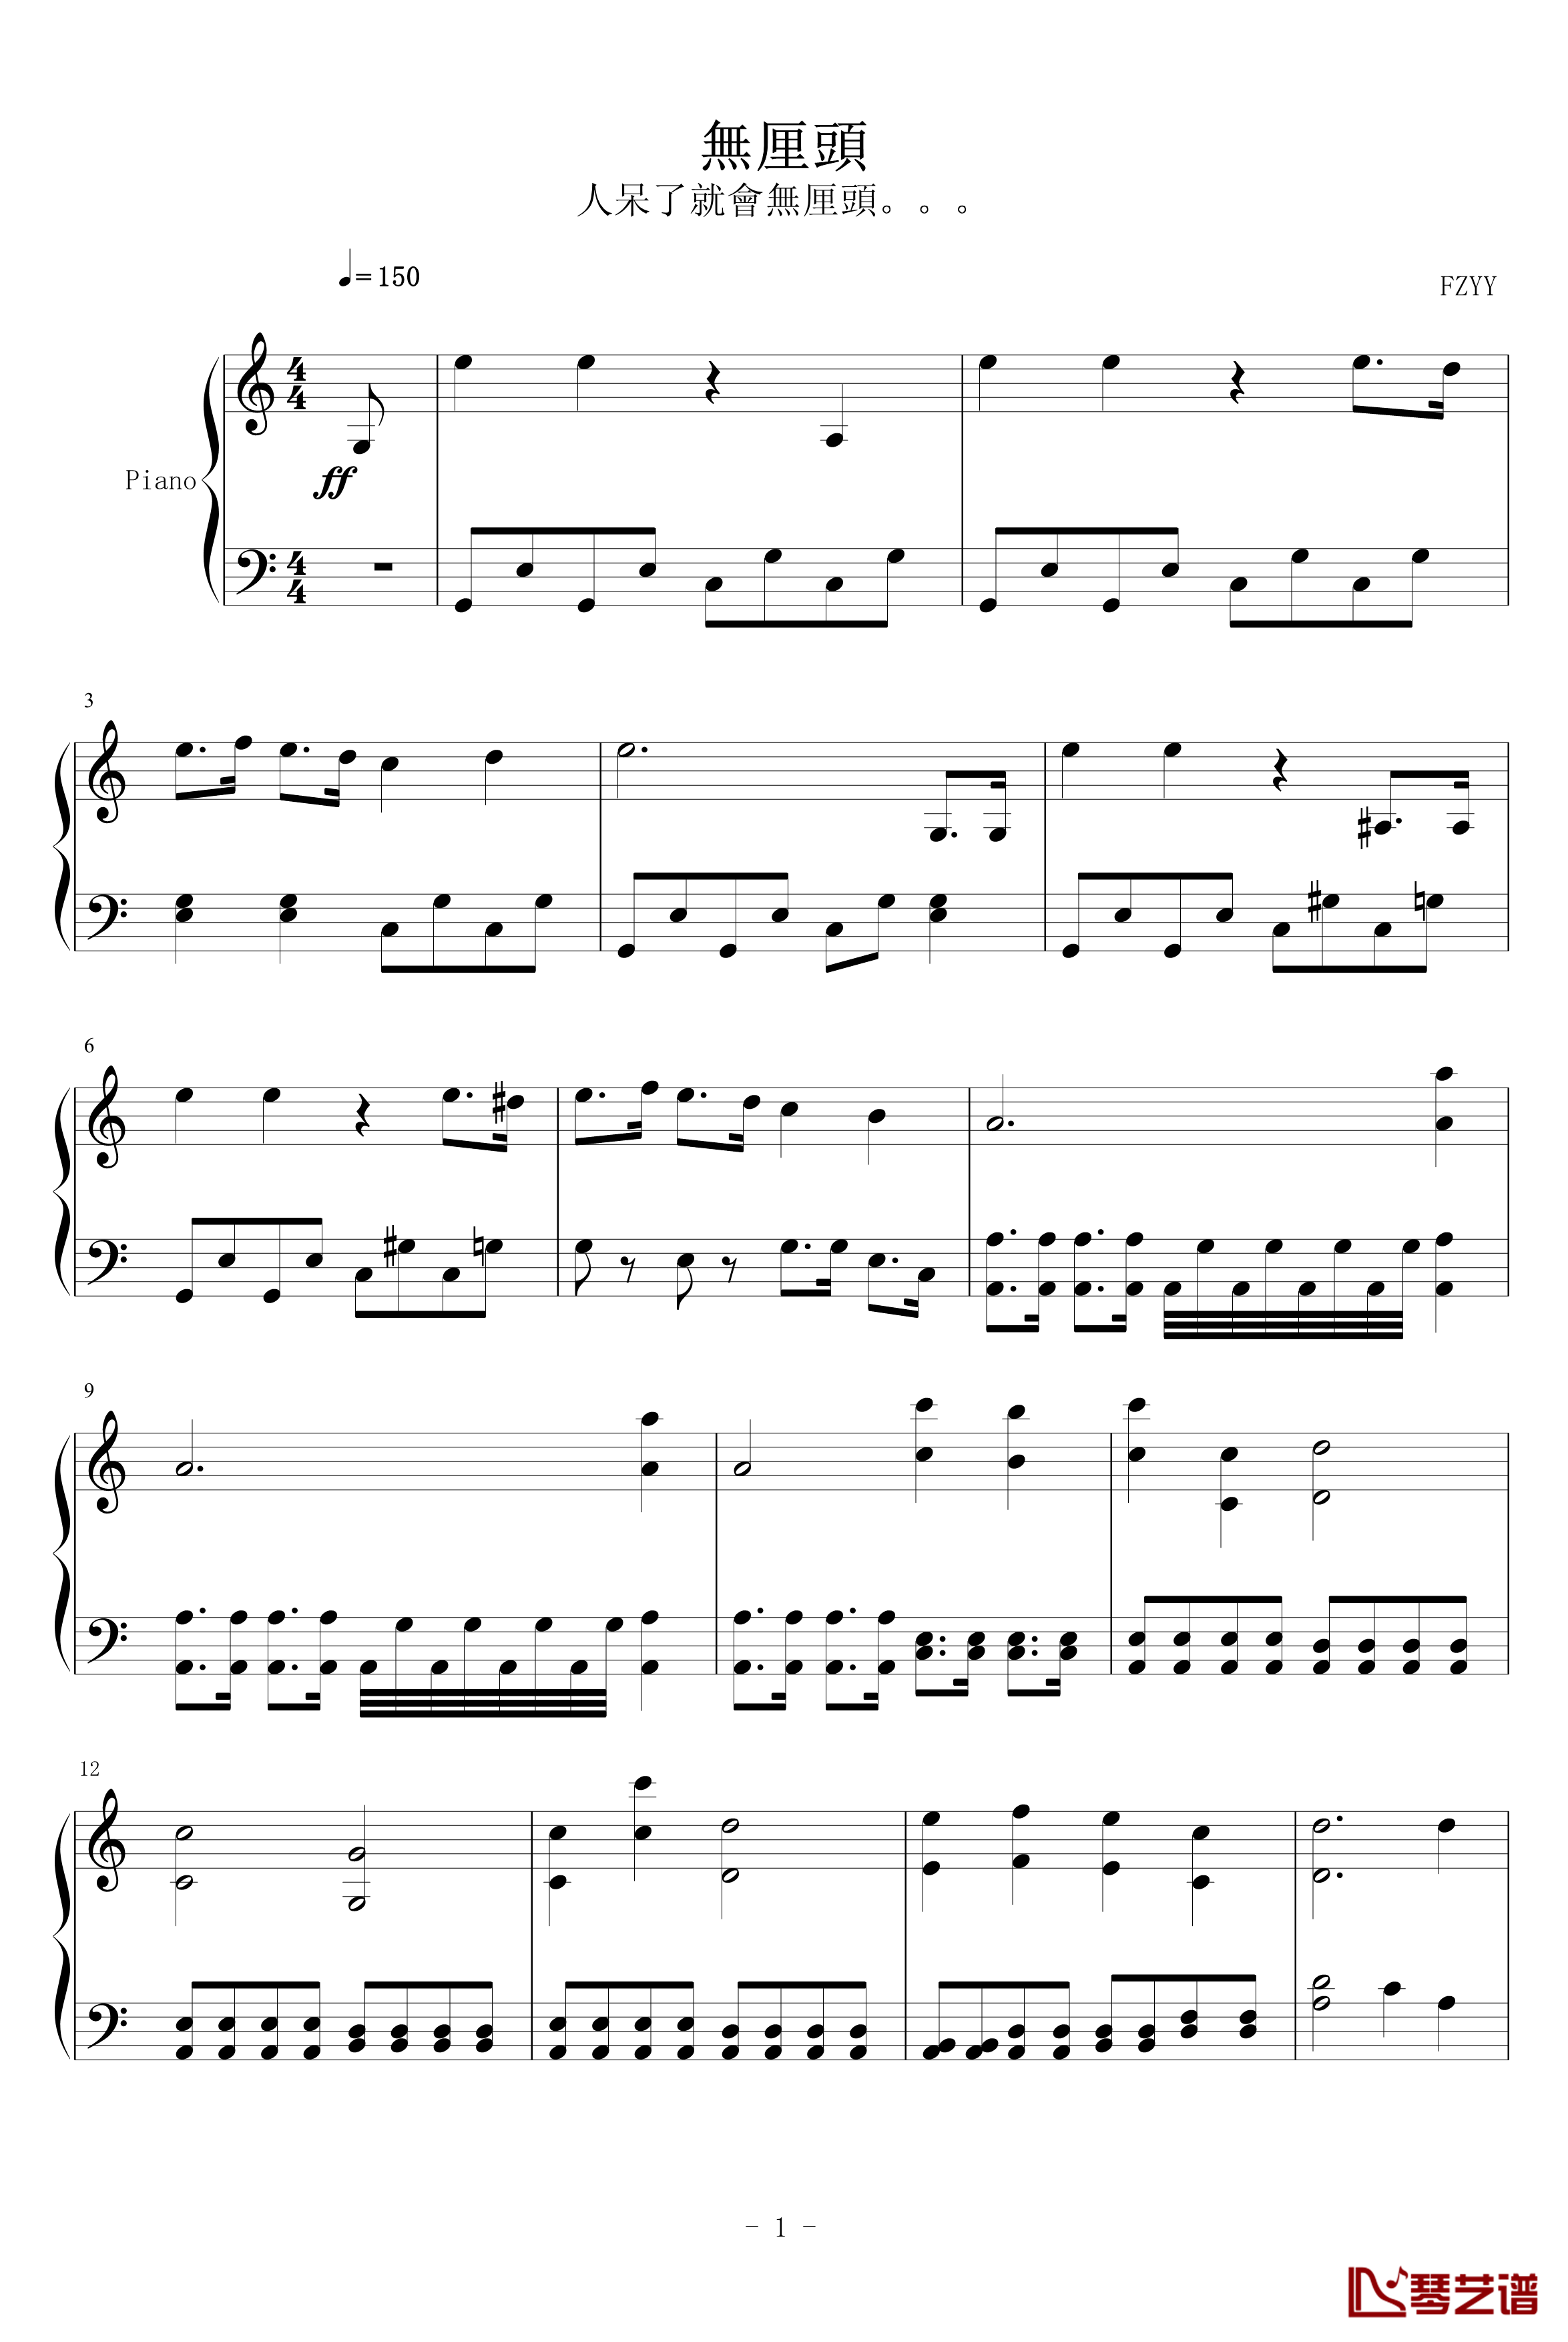 無厘头钢琴谱-風之音韻1